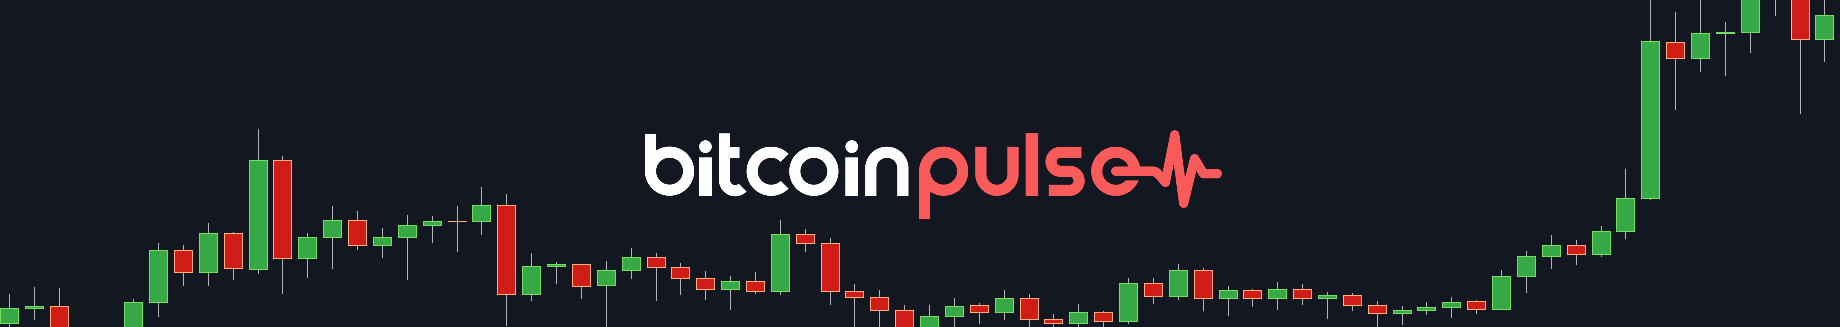 Only Bitcoin Makes Sense Right Now - Bitcoin Pulse #73